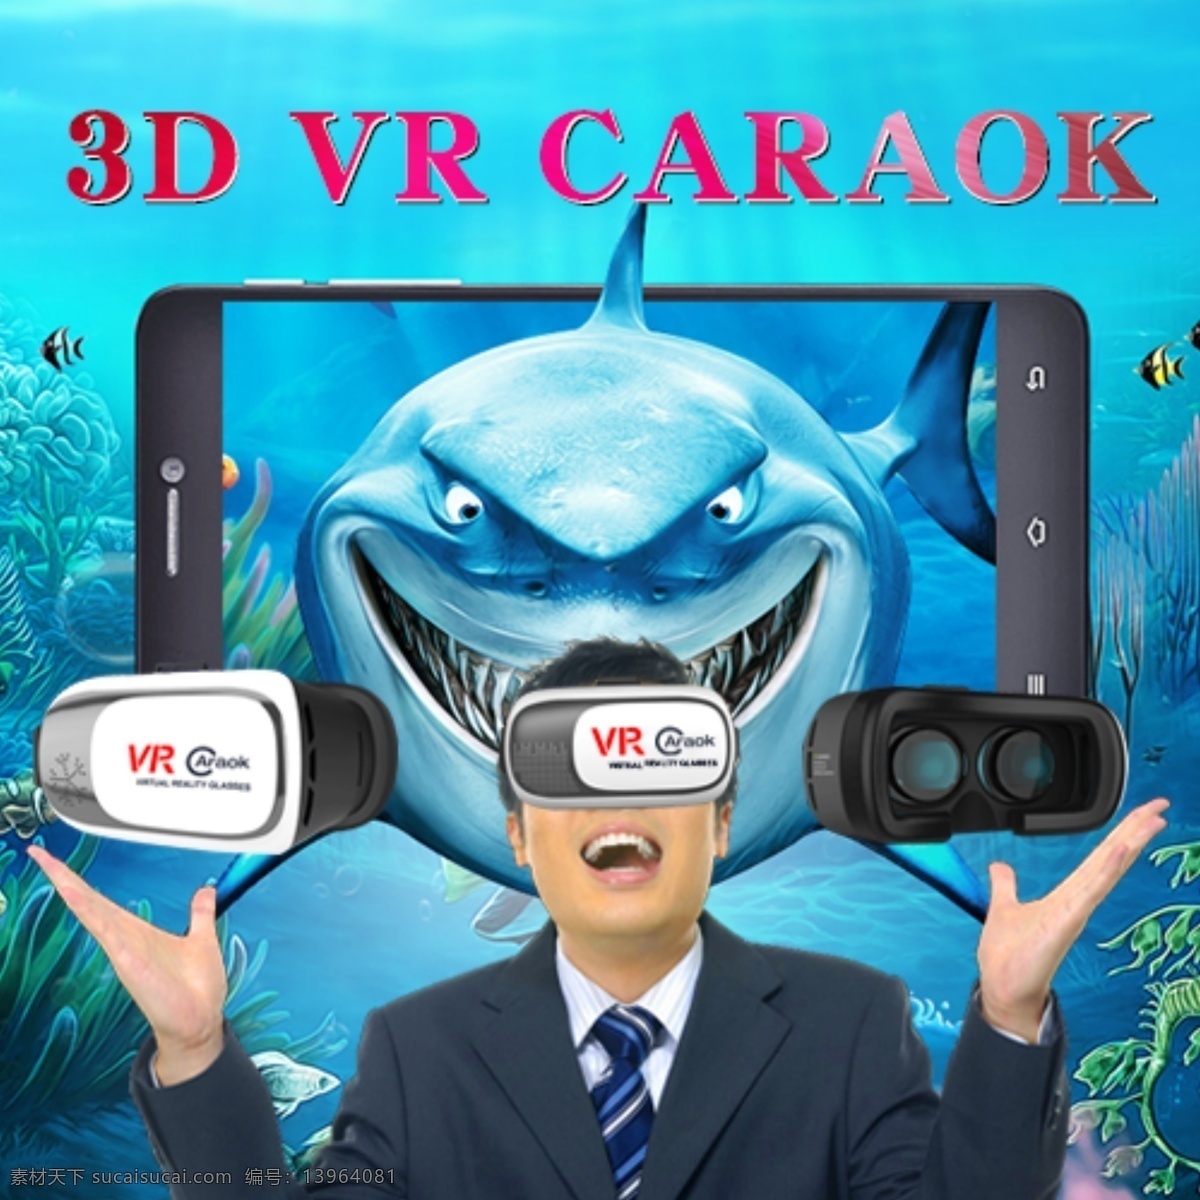 vr眼镜 3d 虚拟现实 眼镜 高清主图 主图 虚拟眼镜 青色 天蓝色